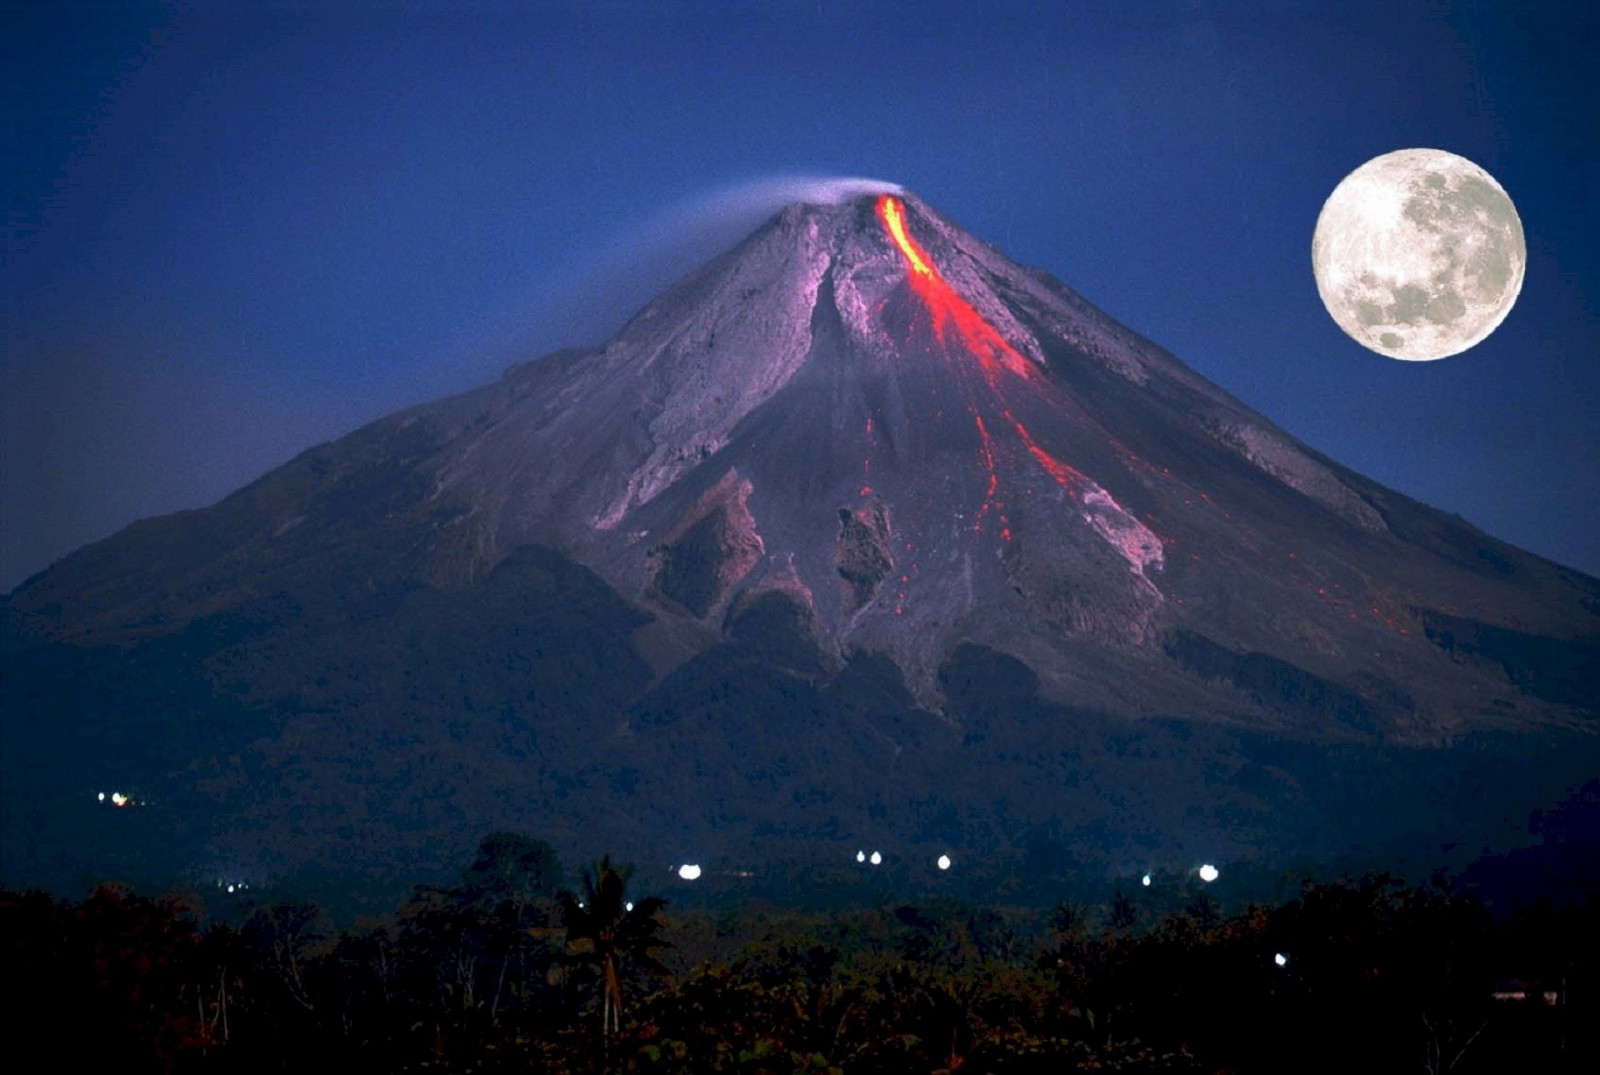 Вогняна гора, Індонезія. Діючий вулкан, вивергався вже близько сотні раз. Стовпи попелу над Вогняною горою підіймаються на висоту до 3000 м. Останнє значуще виверження було зафіксовано у 2014 році, тоді загинуло близько двох десятків місцевих жителів.